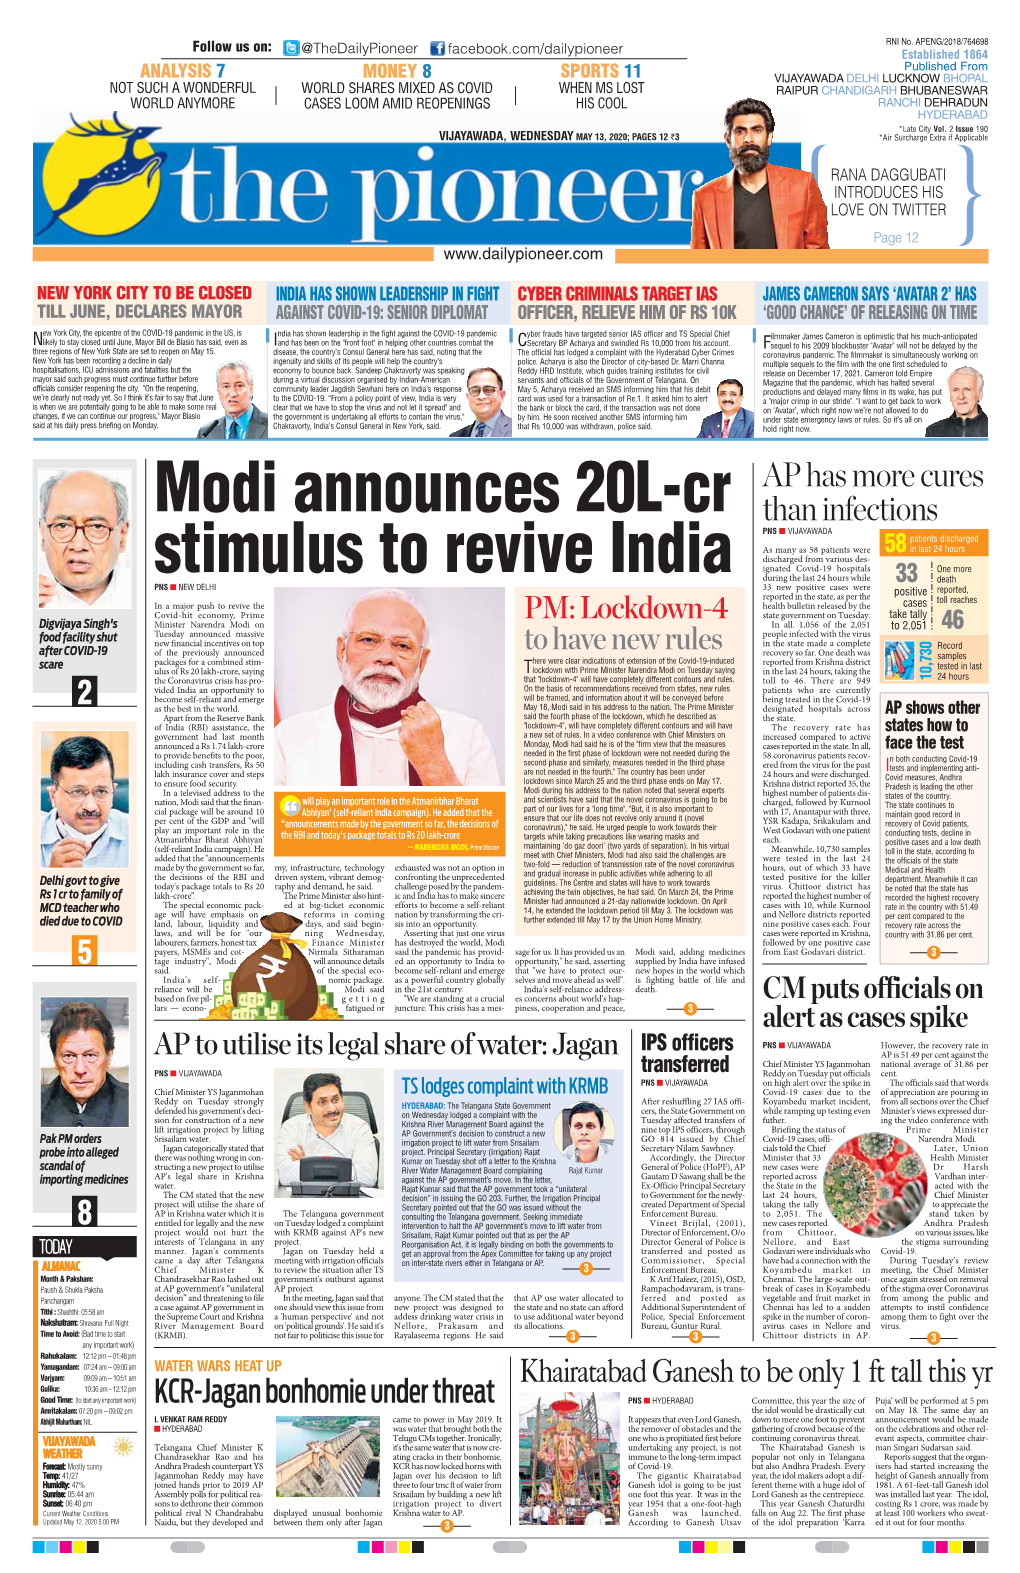 Modi Announces 20L-Cr Stimulus to Revive India